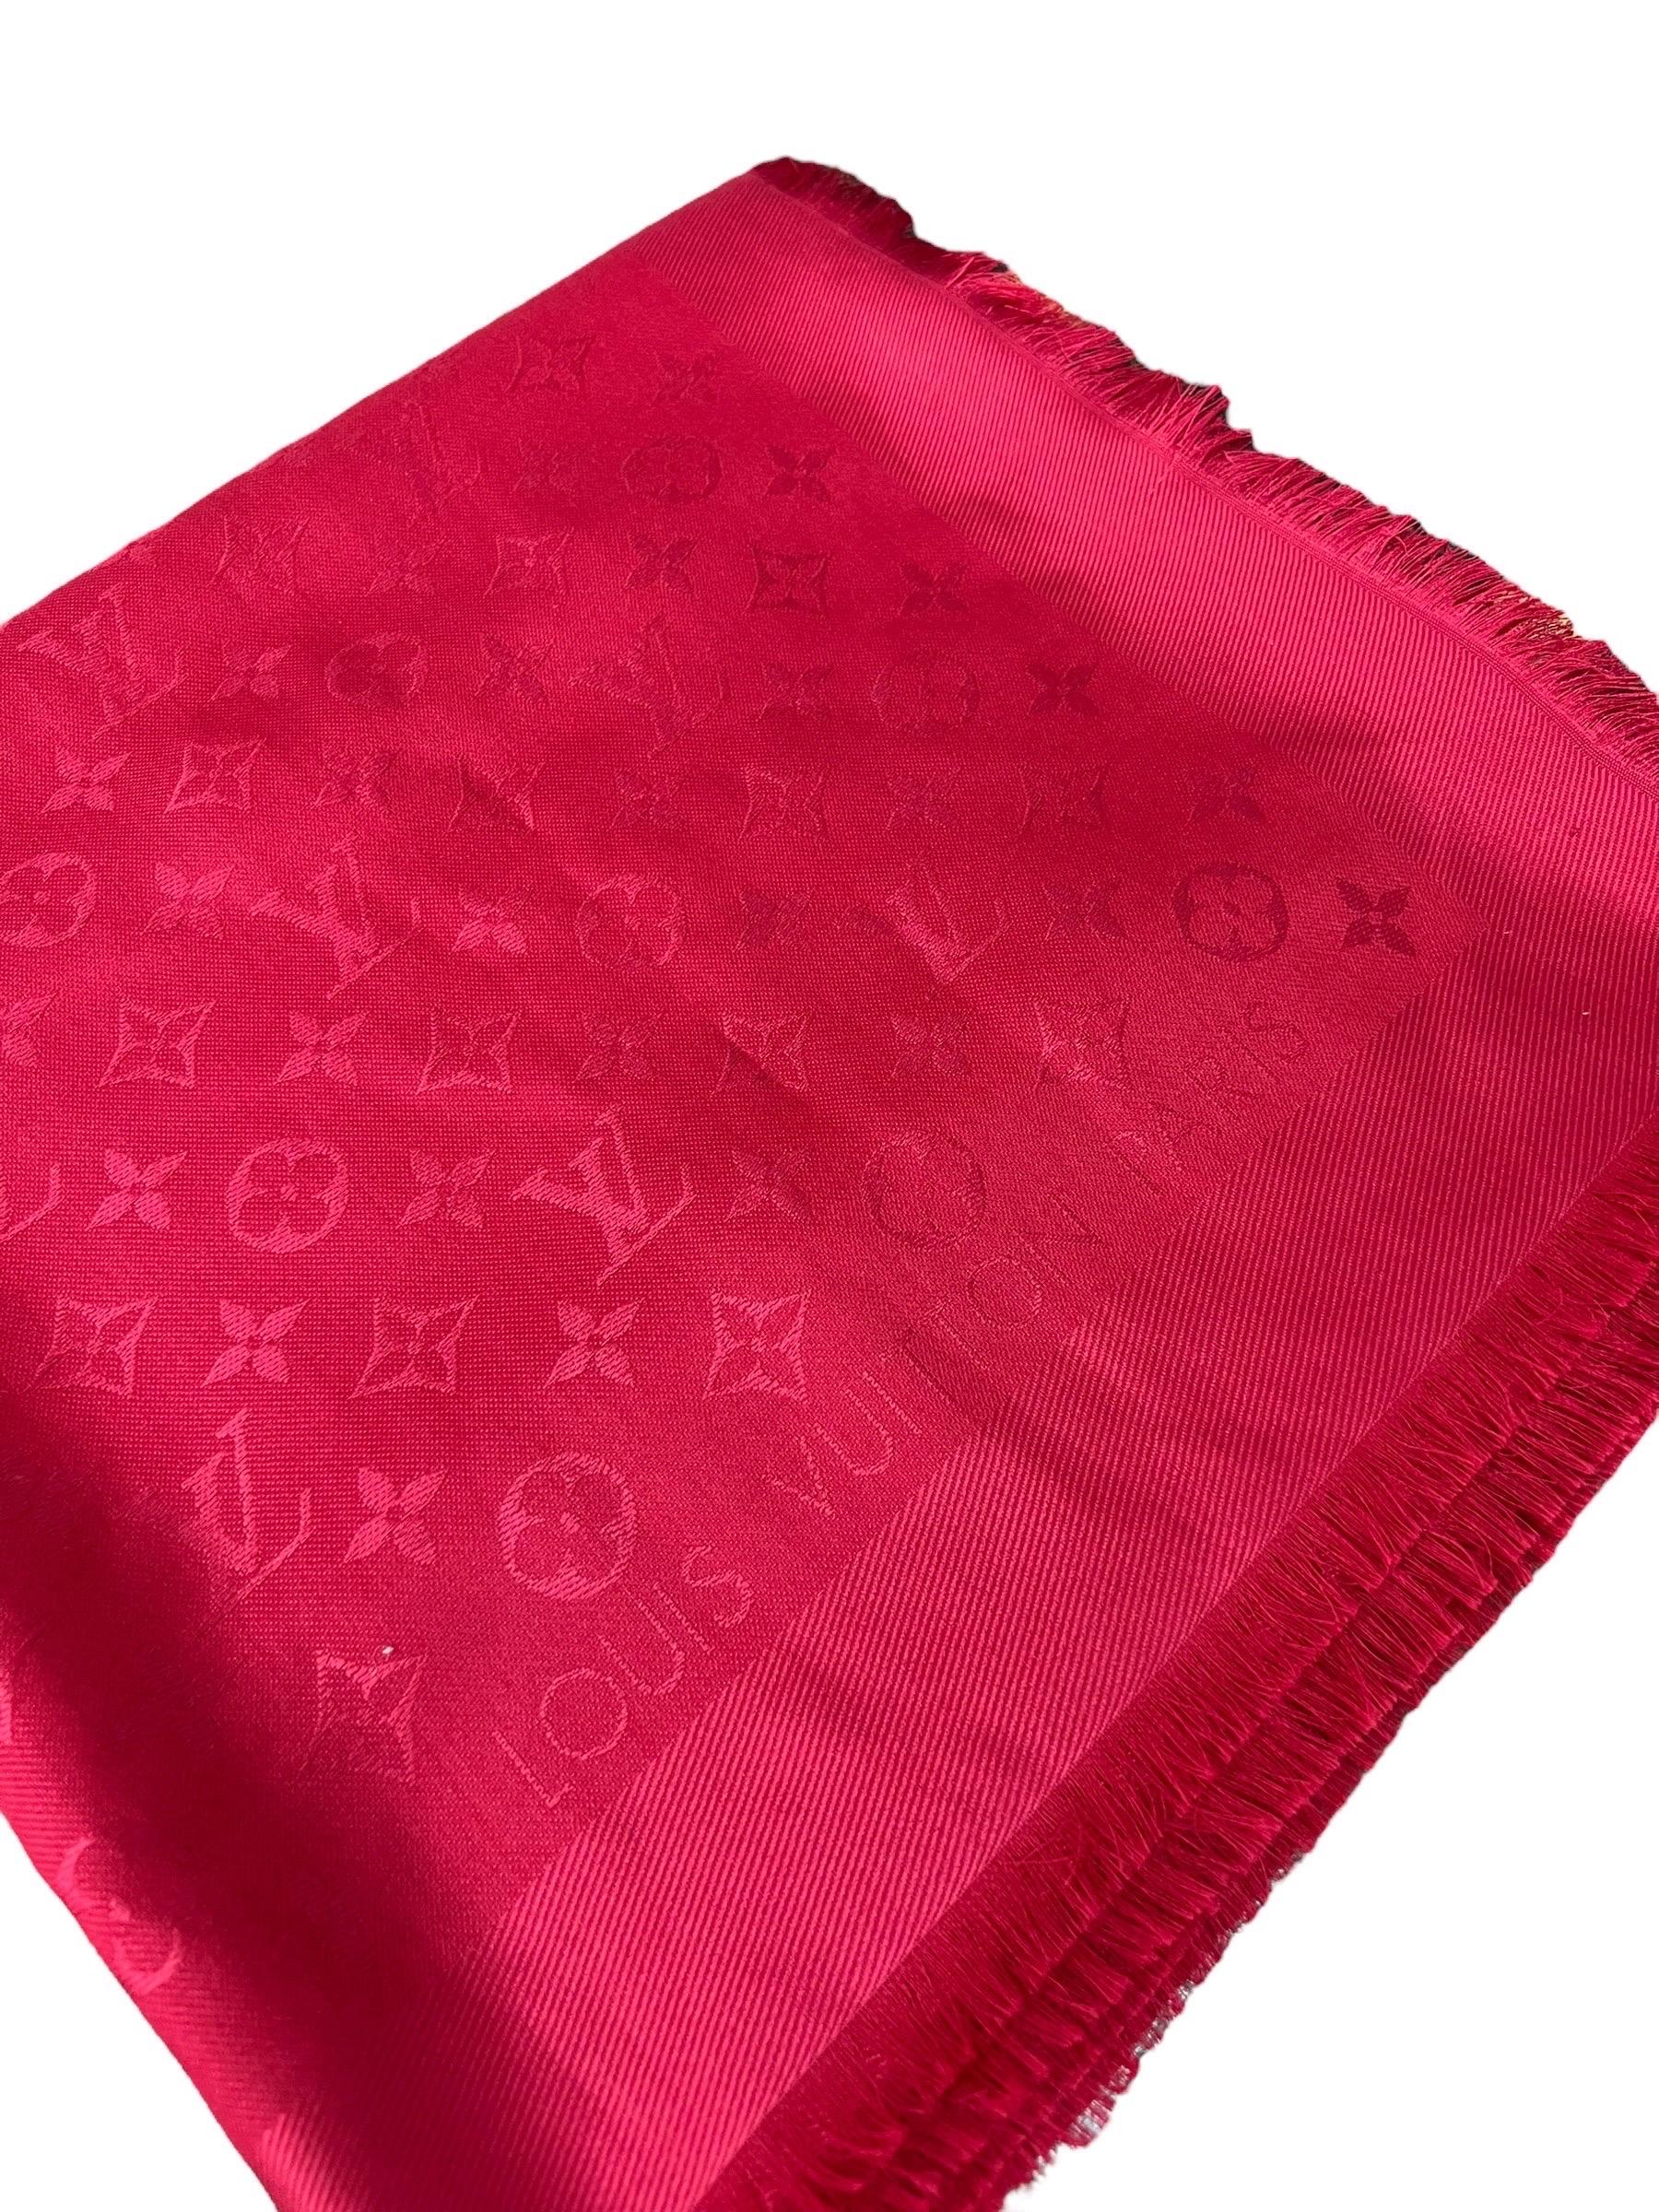 Louis Vuitton Scialle Monogram Rosso In Seta E Lana  For Sale 3